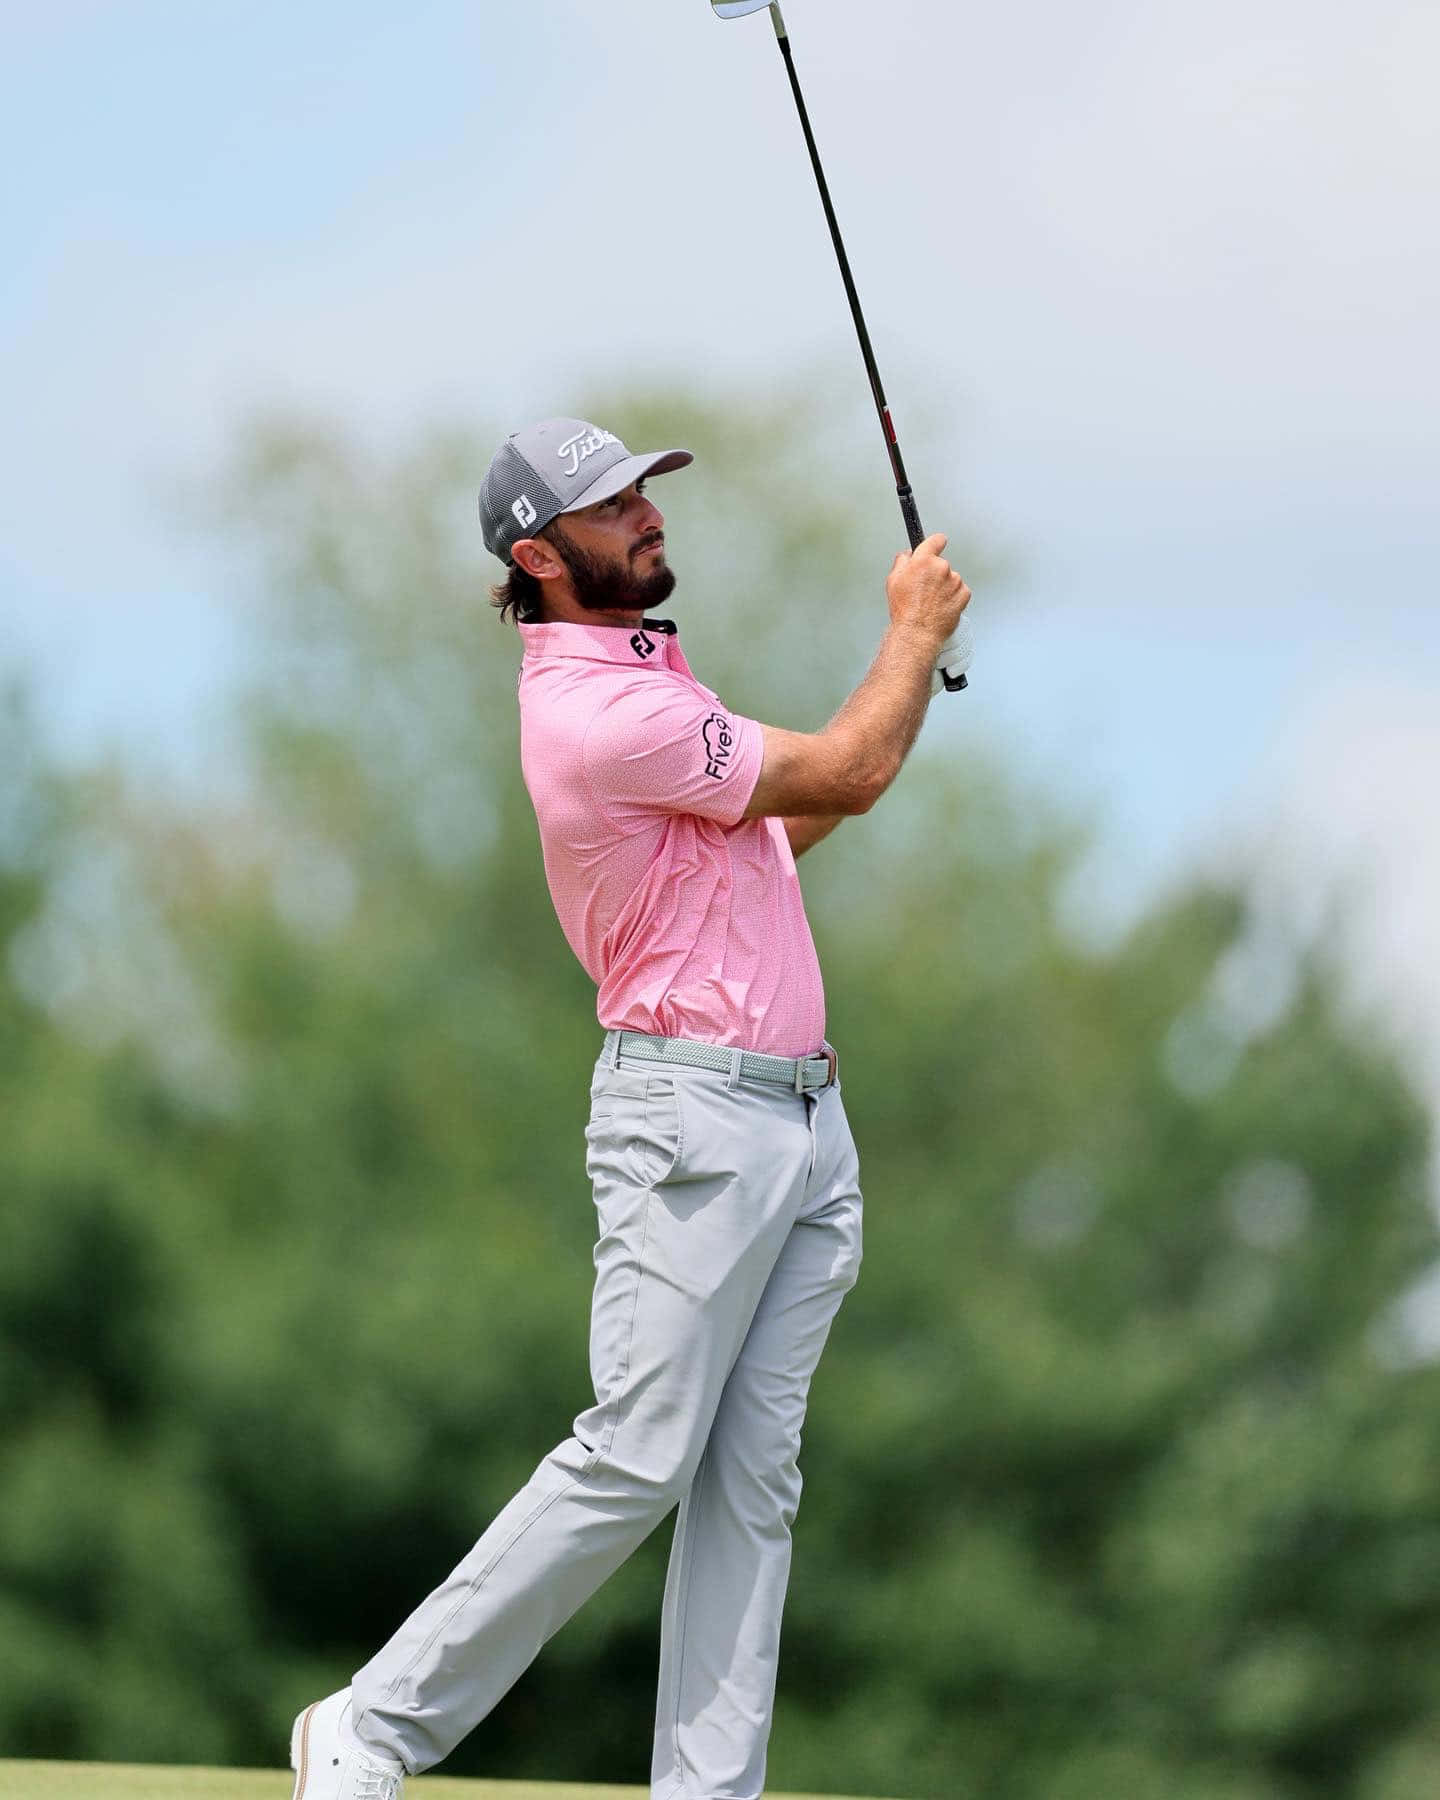 Max Homa Pink Skjort Golf Swing Wallpaper Wallpaper